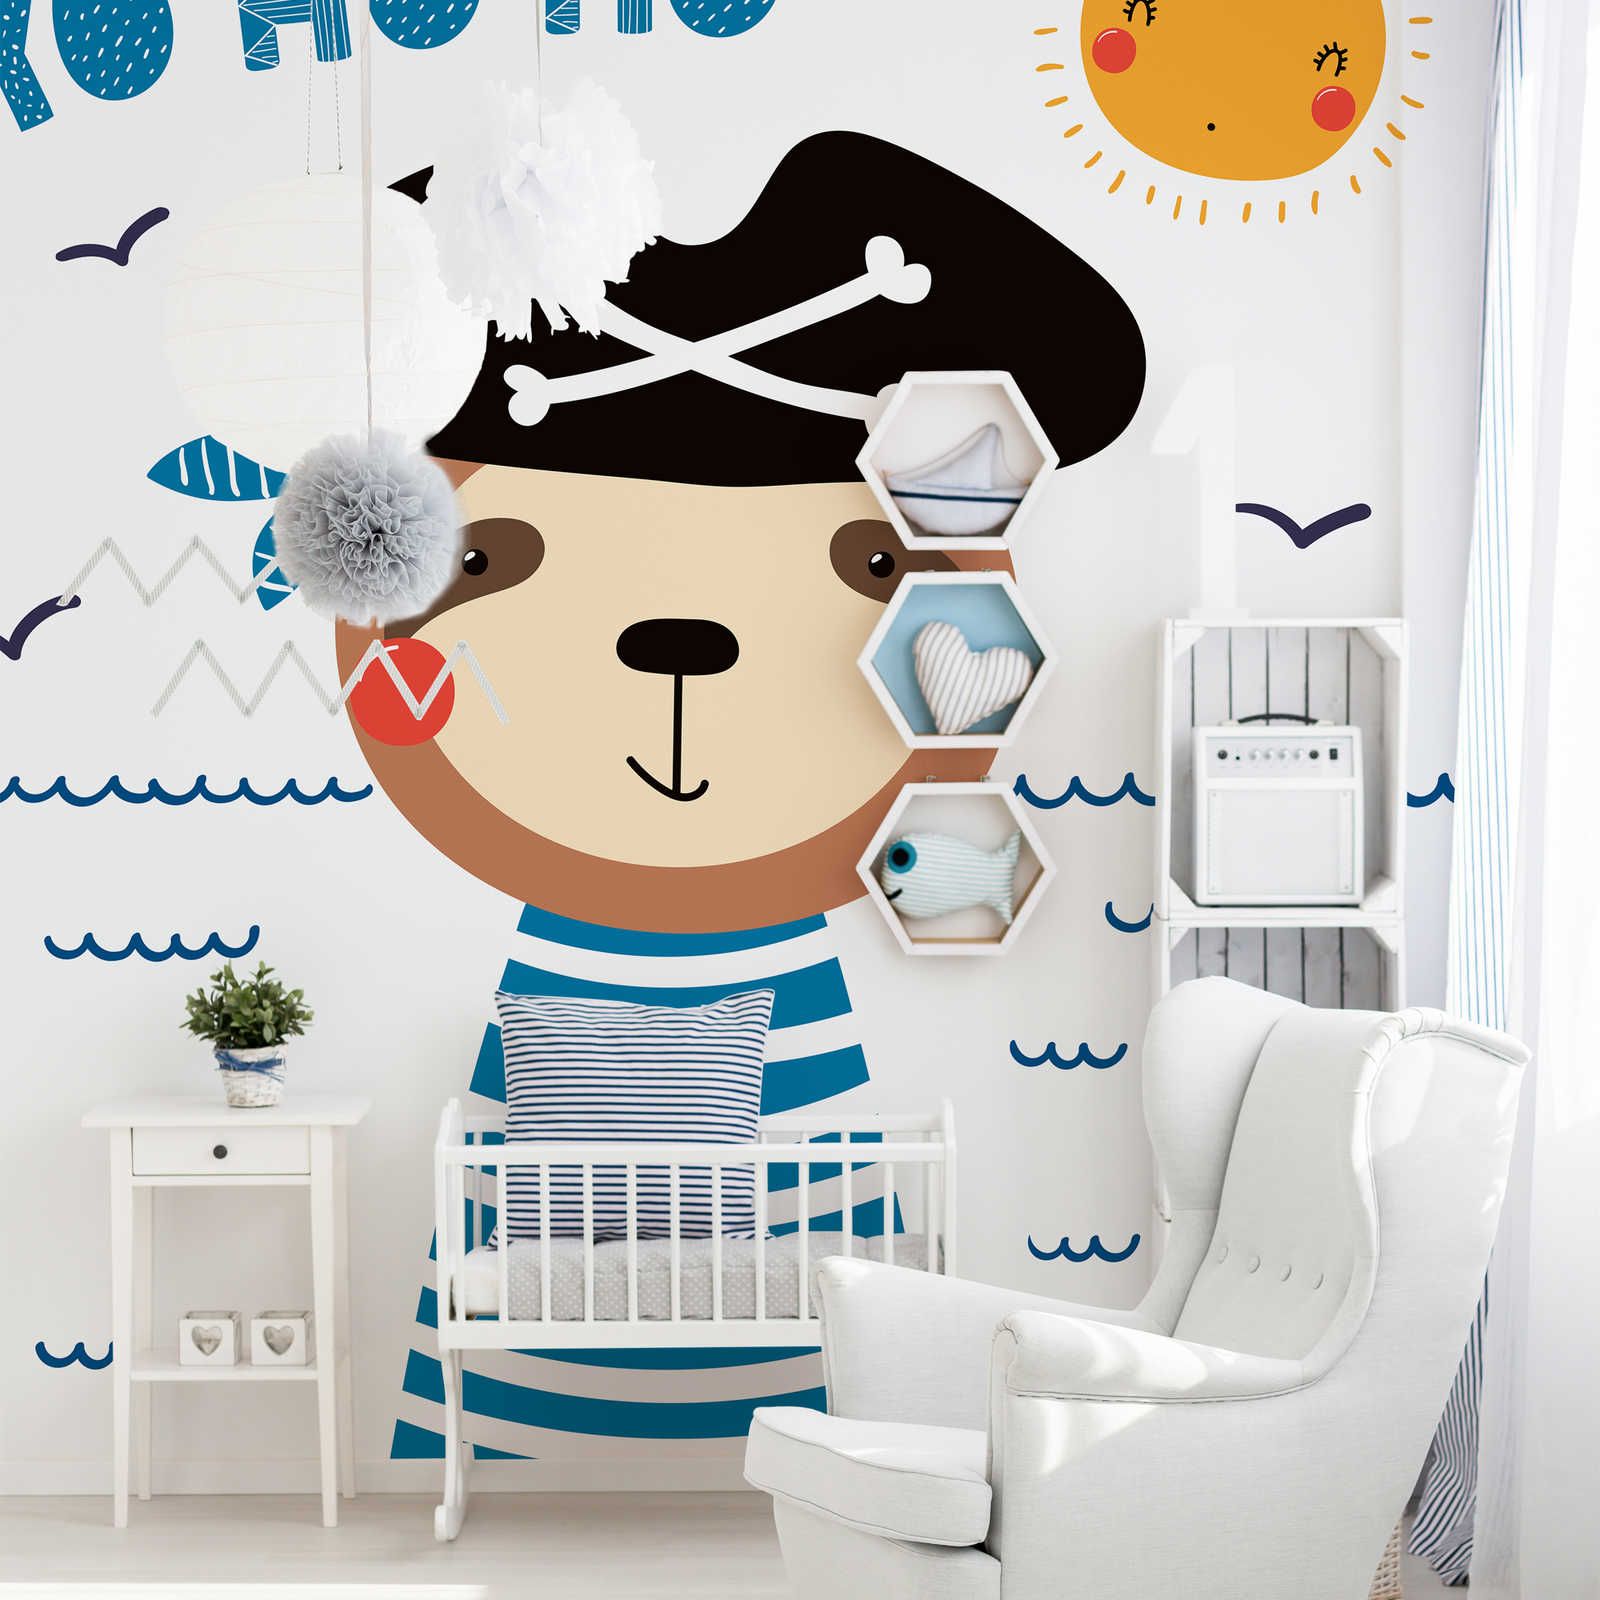         Fototapete fürs Kinderzimmer mit Bären-Pirat – Glattes & leicht glänzendes Vlies
    